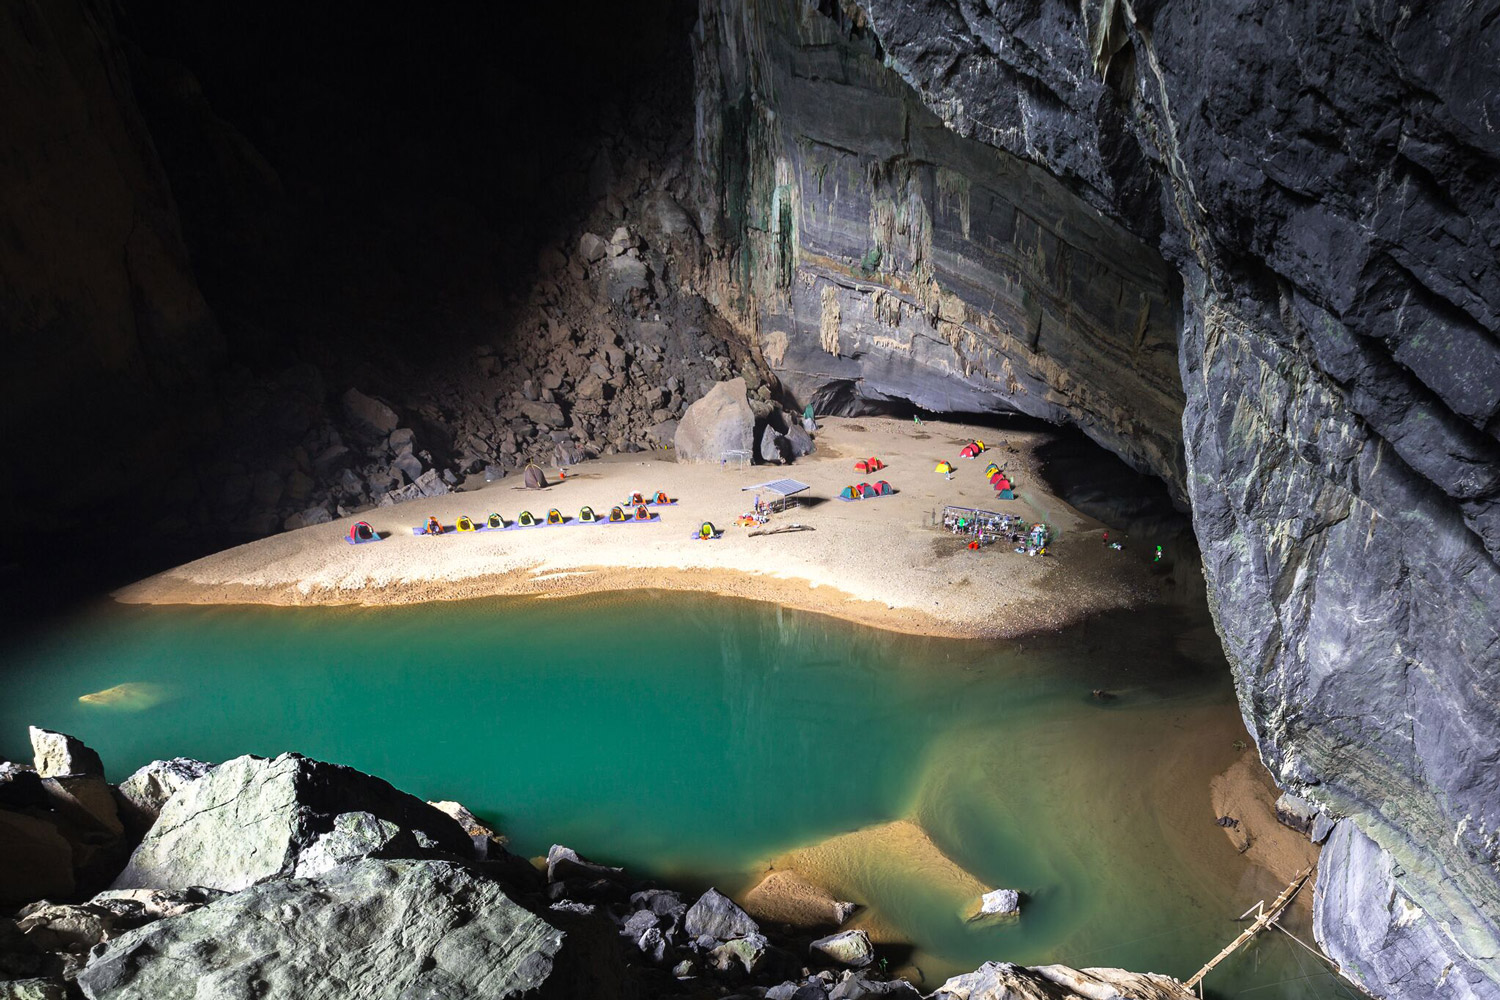 Phát hiện hang động mới “xẻ đôi” rừng Trường Sơn ở Quảng Bình, các tín đồ mê thám hiểm không thể bỏ lỡ - Ảnh 5.